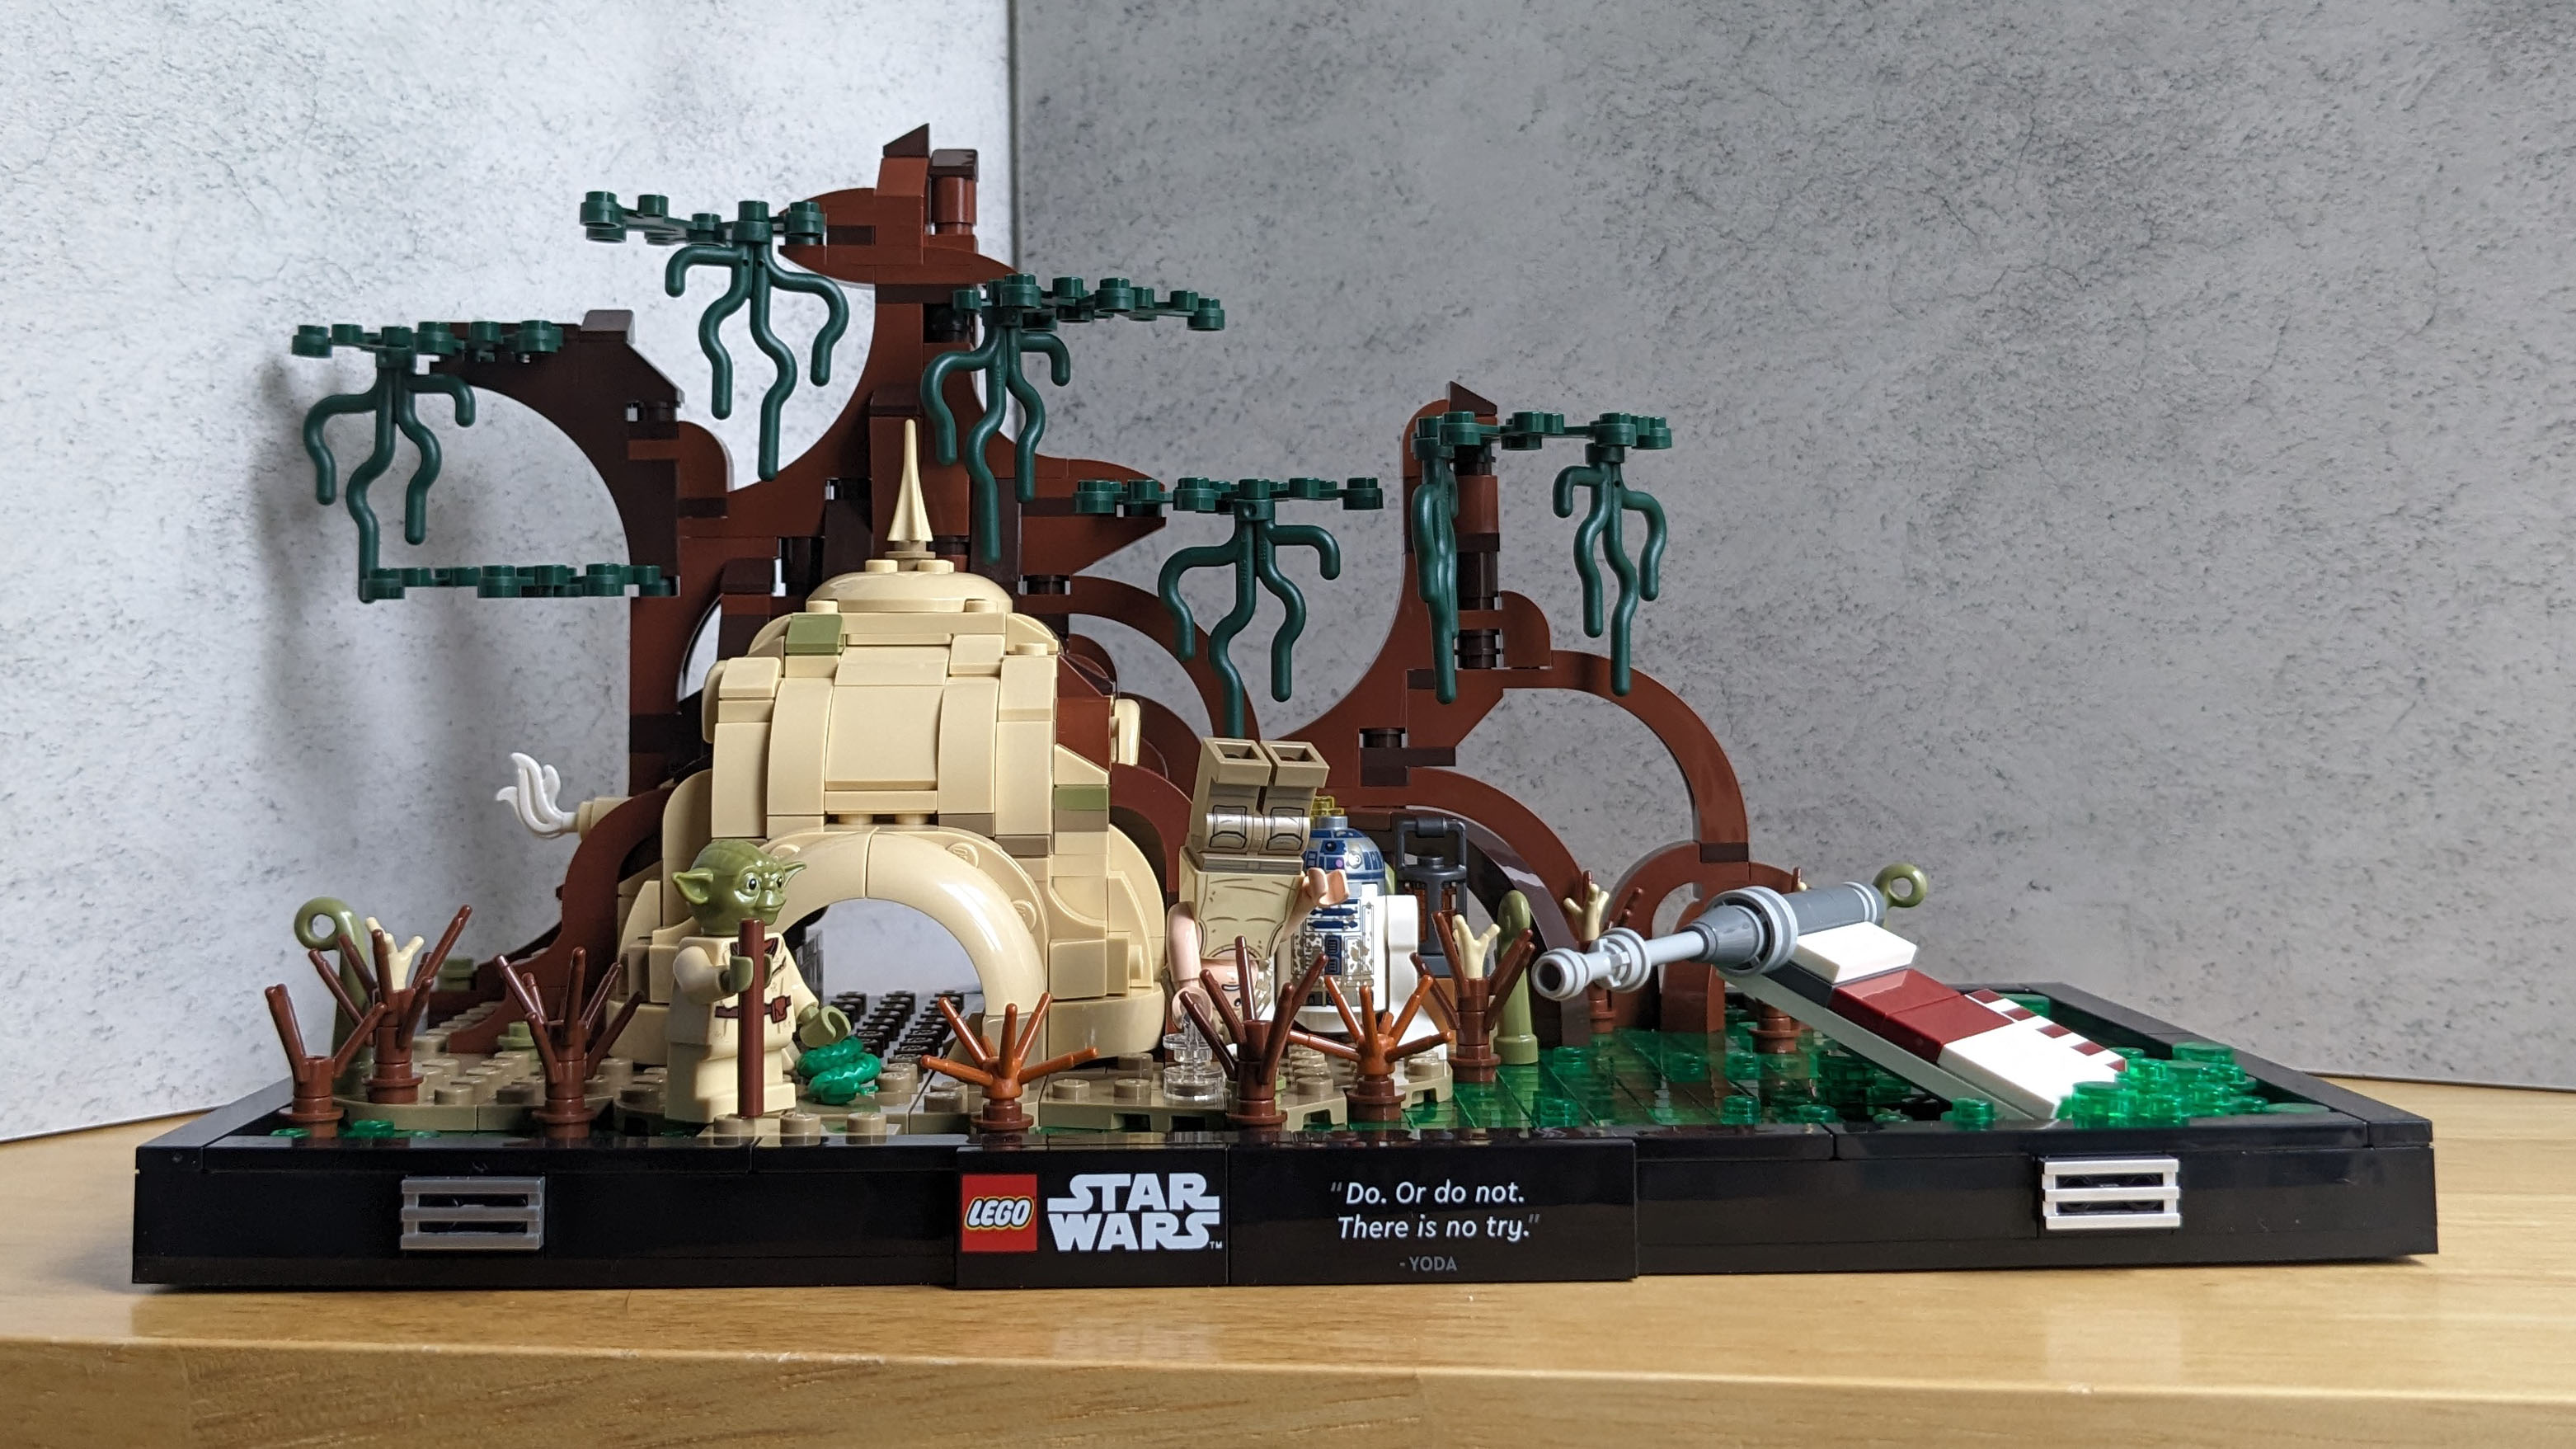 Lego Star Wars Dagobah Jedi Training Diorama review